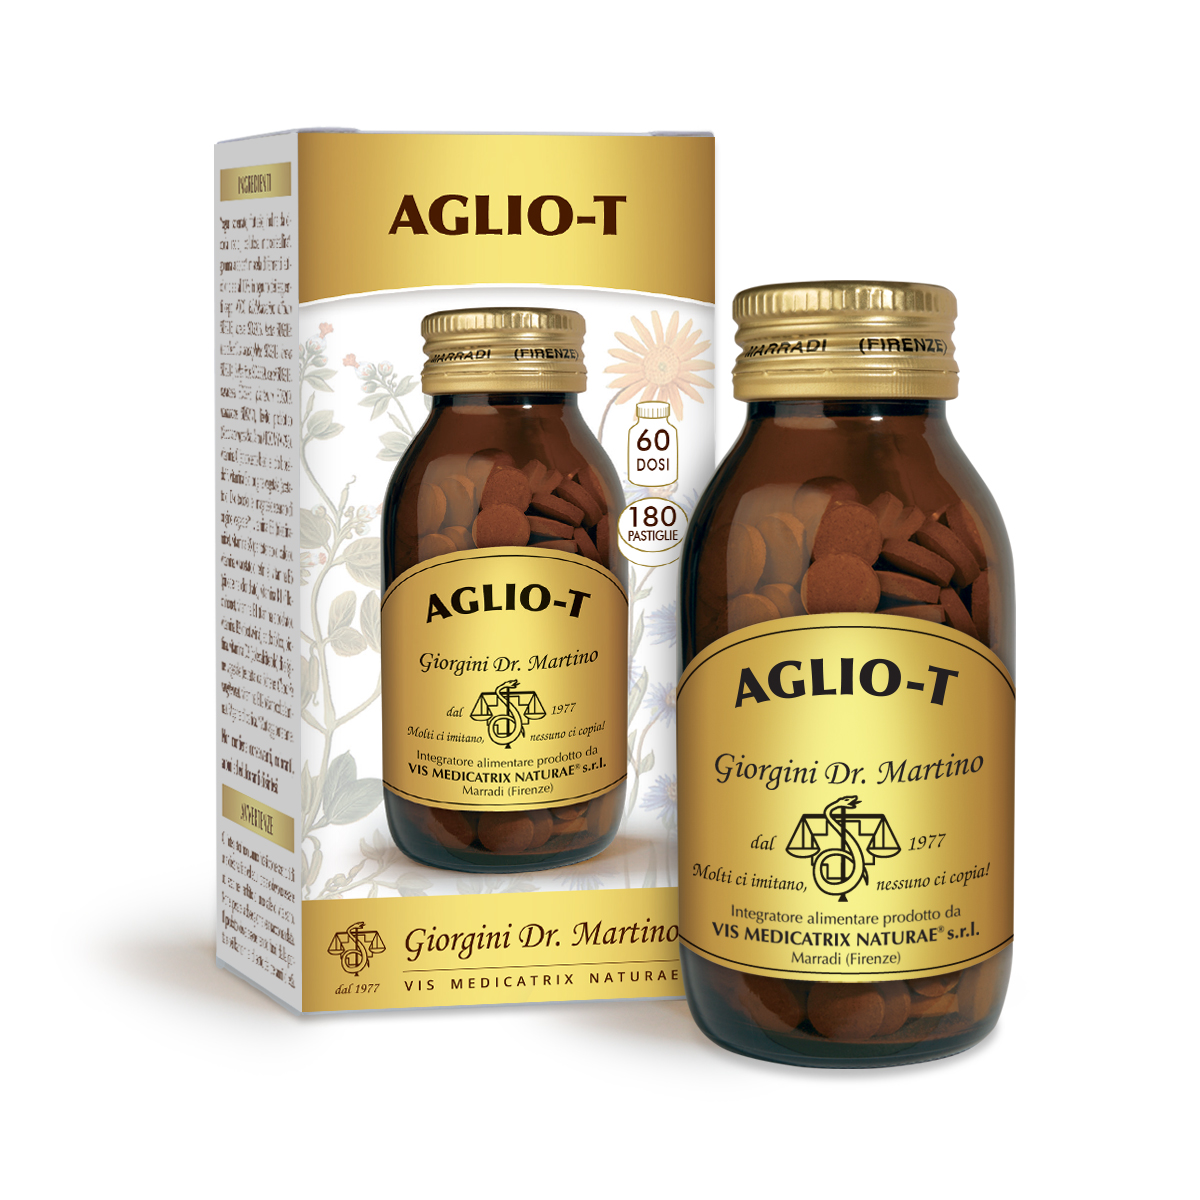 AGLIO-T 90 g - 180 pastiglie da 500 mg